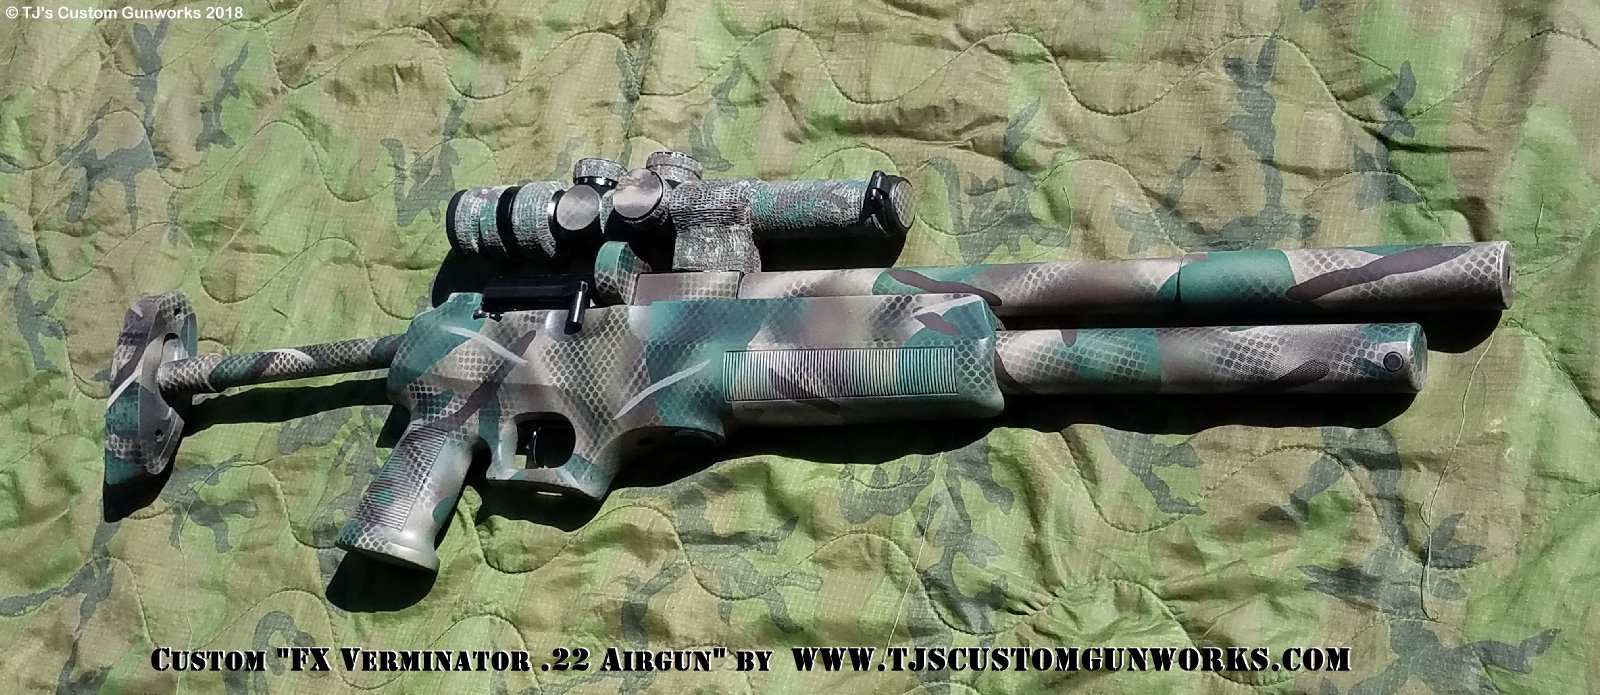 Custom Camo Duracoat FX Verminator .22 PCP Air Rifle